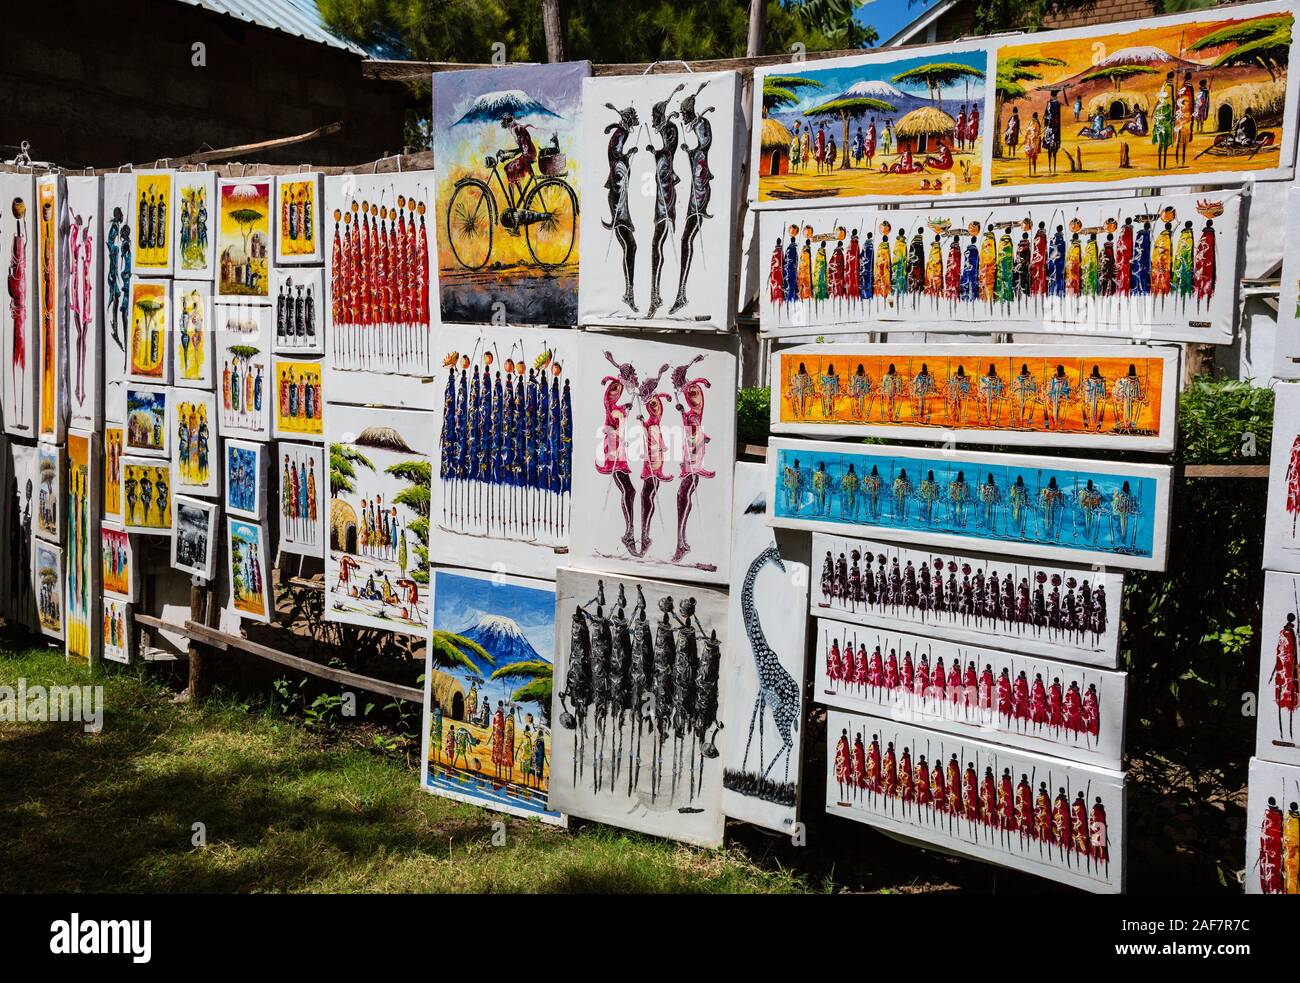 La República Unida de Tanzanía. Mto wa Mbu. Venta de pinturas de artistas locales. Foto de stock